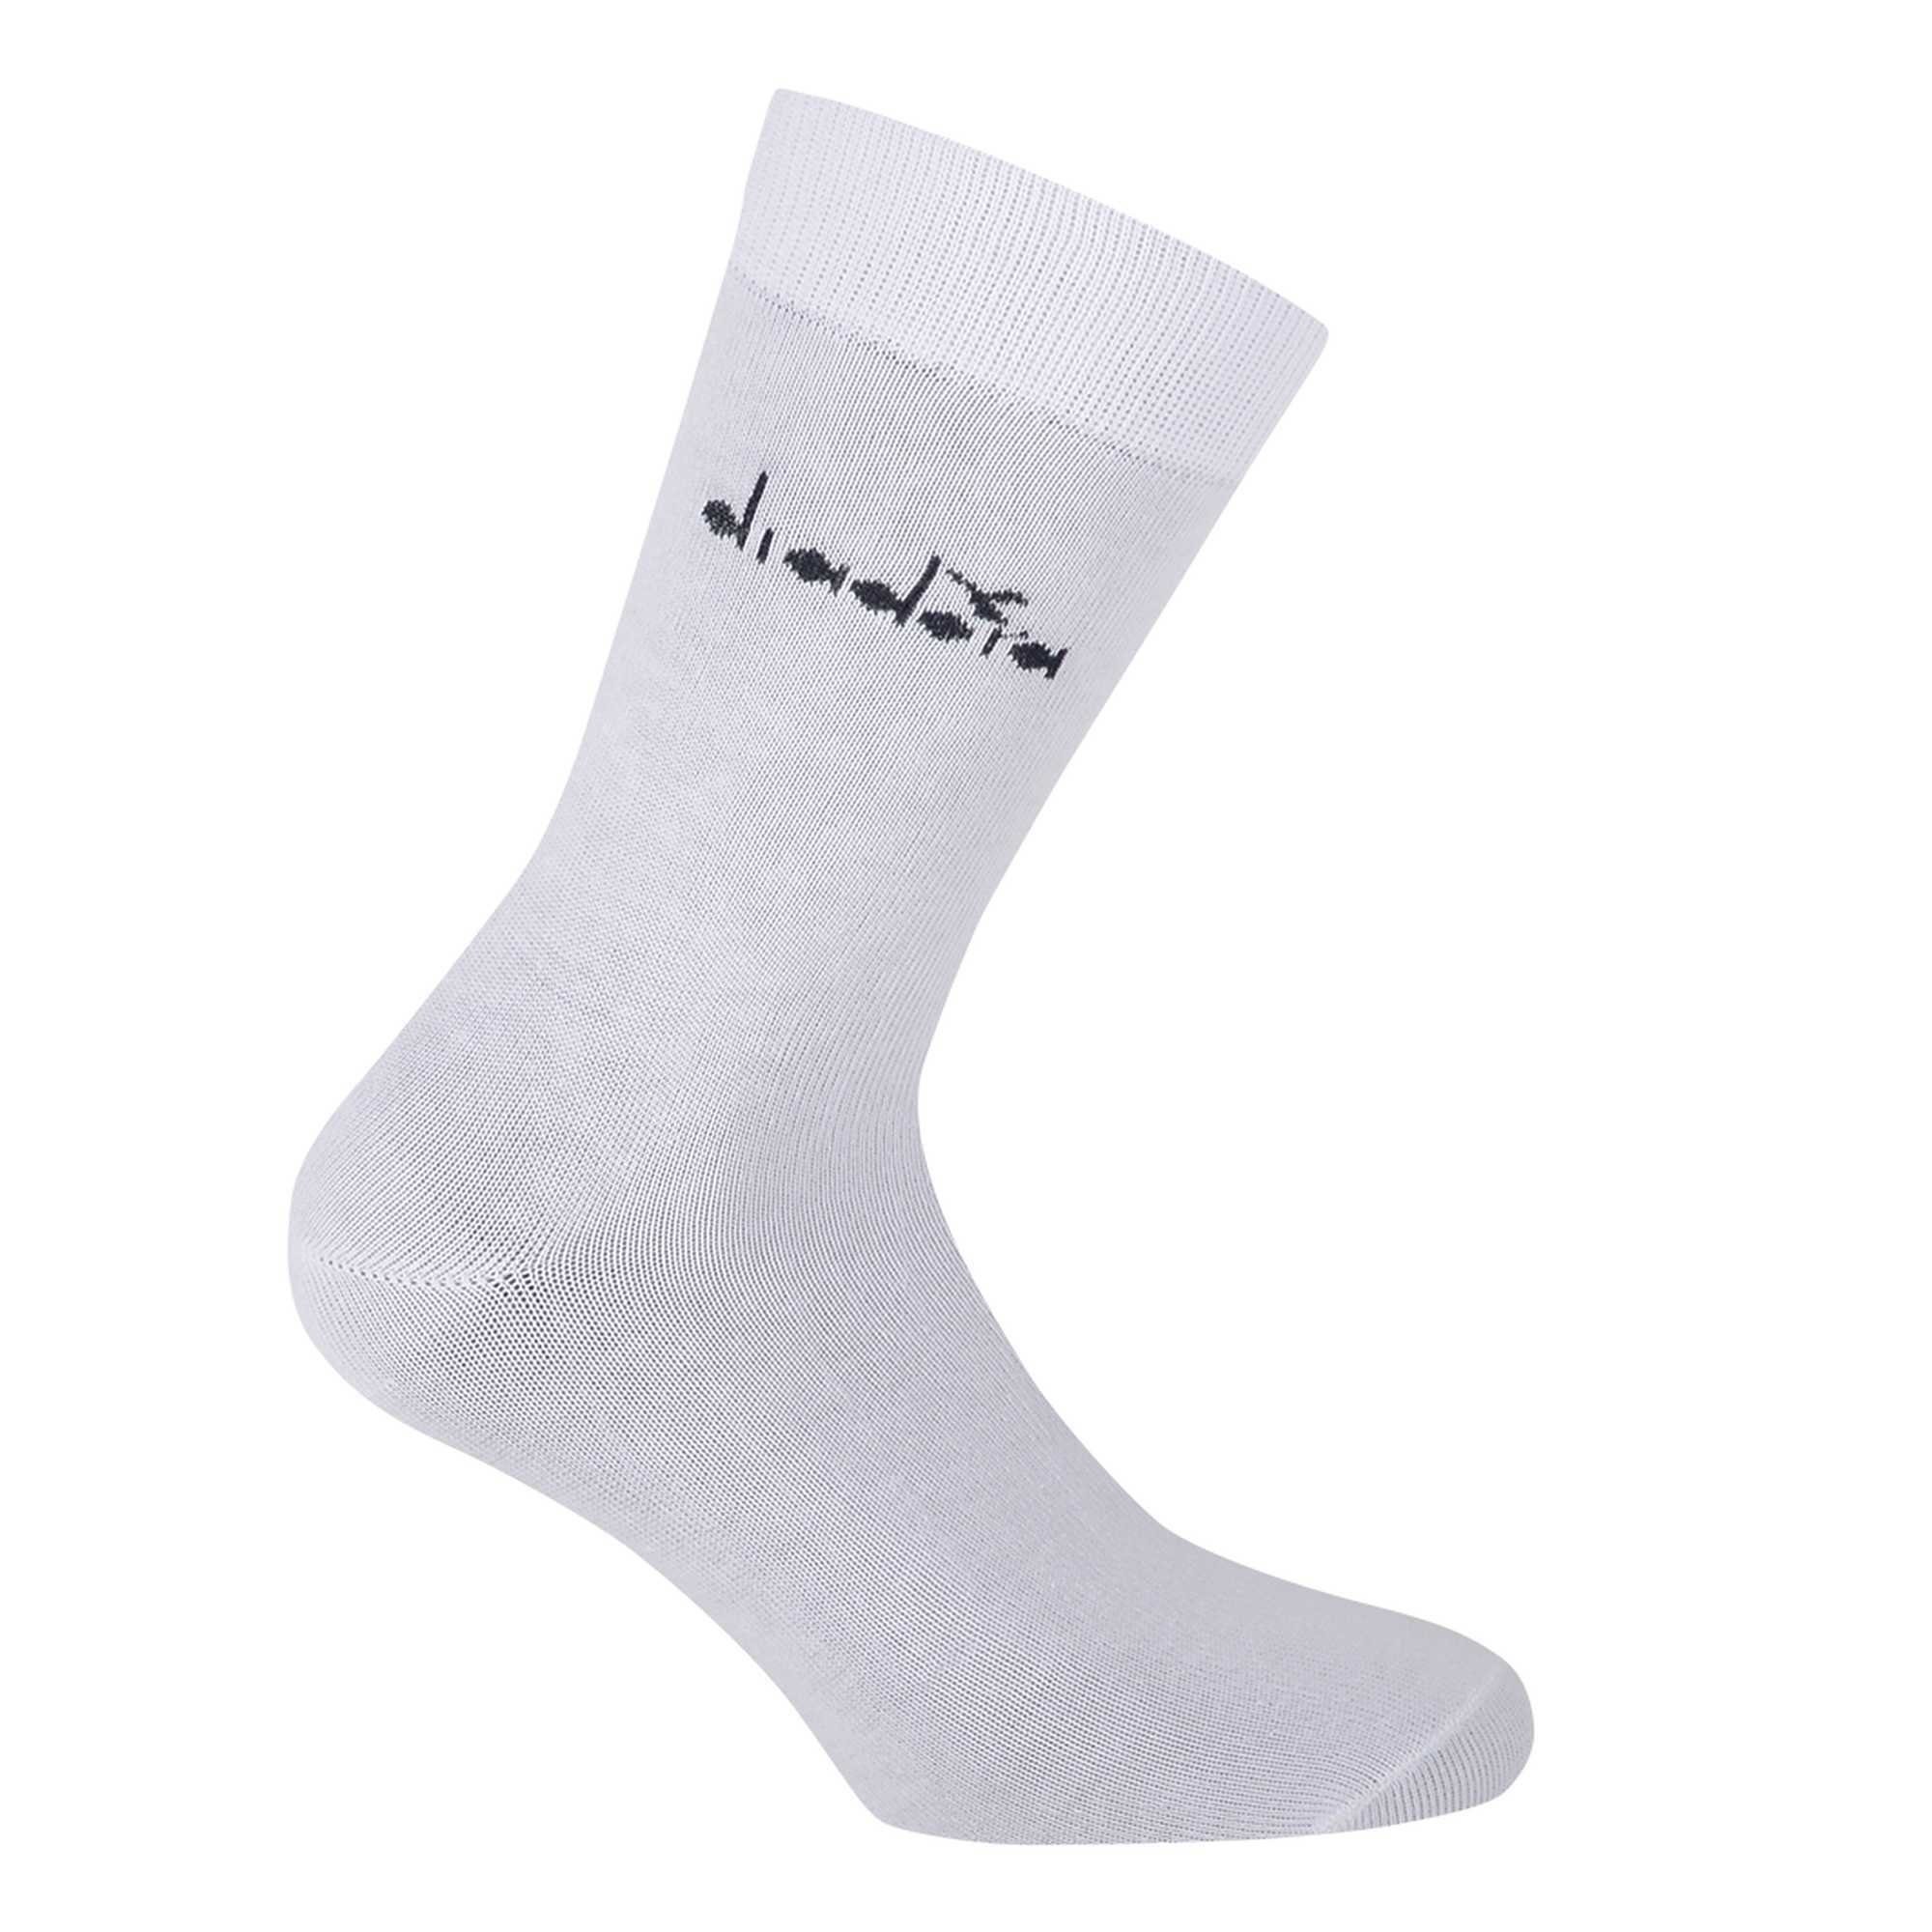 Weiß Sportsocken - Baumwolle Socken, Diadora Pack 6er Sportsocken, Unisex